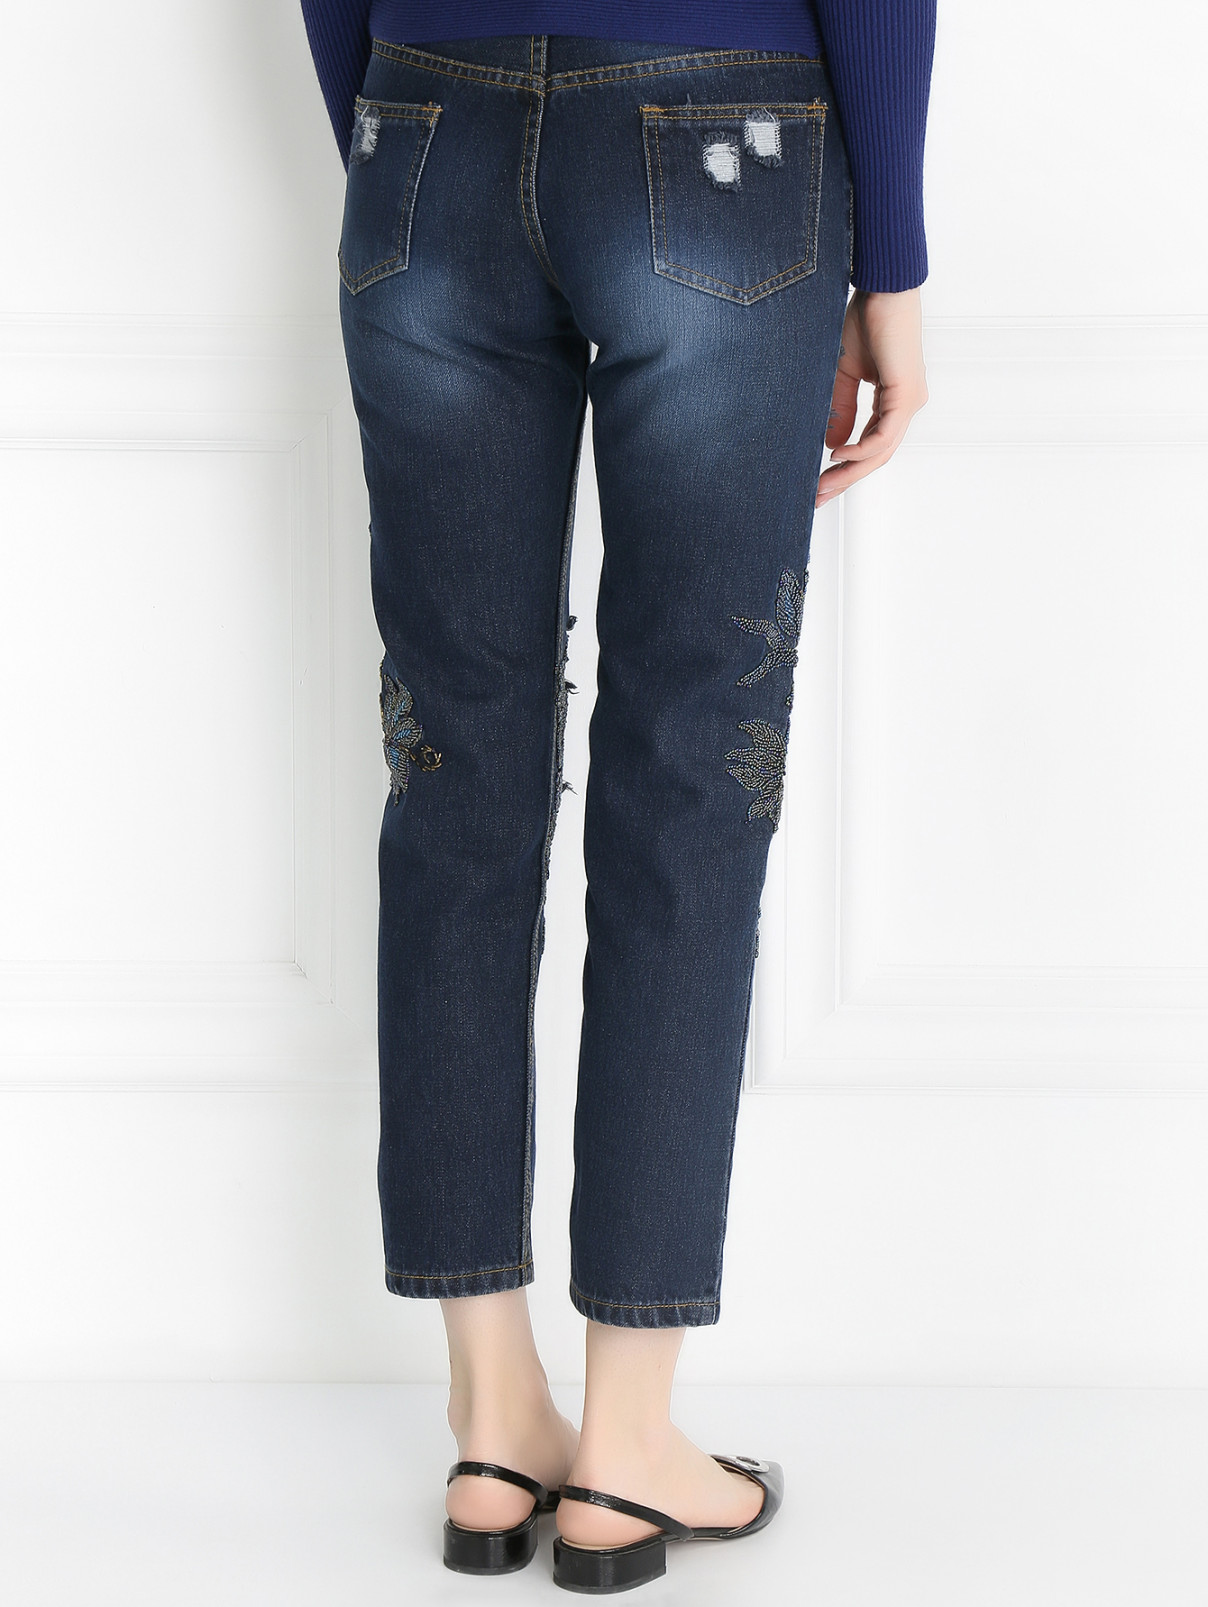 Укороченные джинсы с потертостями и вышивкой из бисера MAD Almadal  –  Модель Верх-Низ1  – Цвет:  Синий